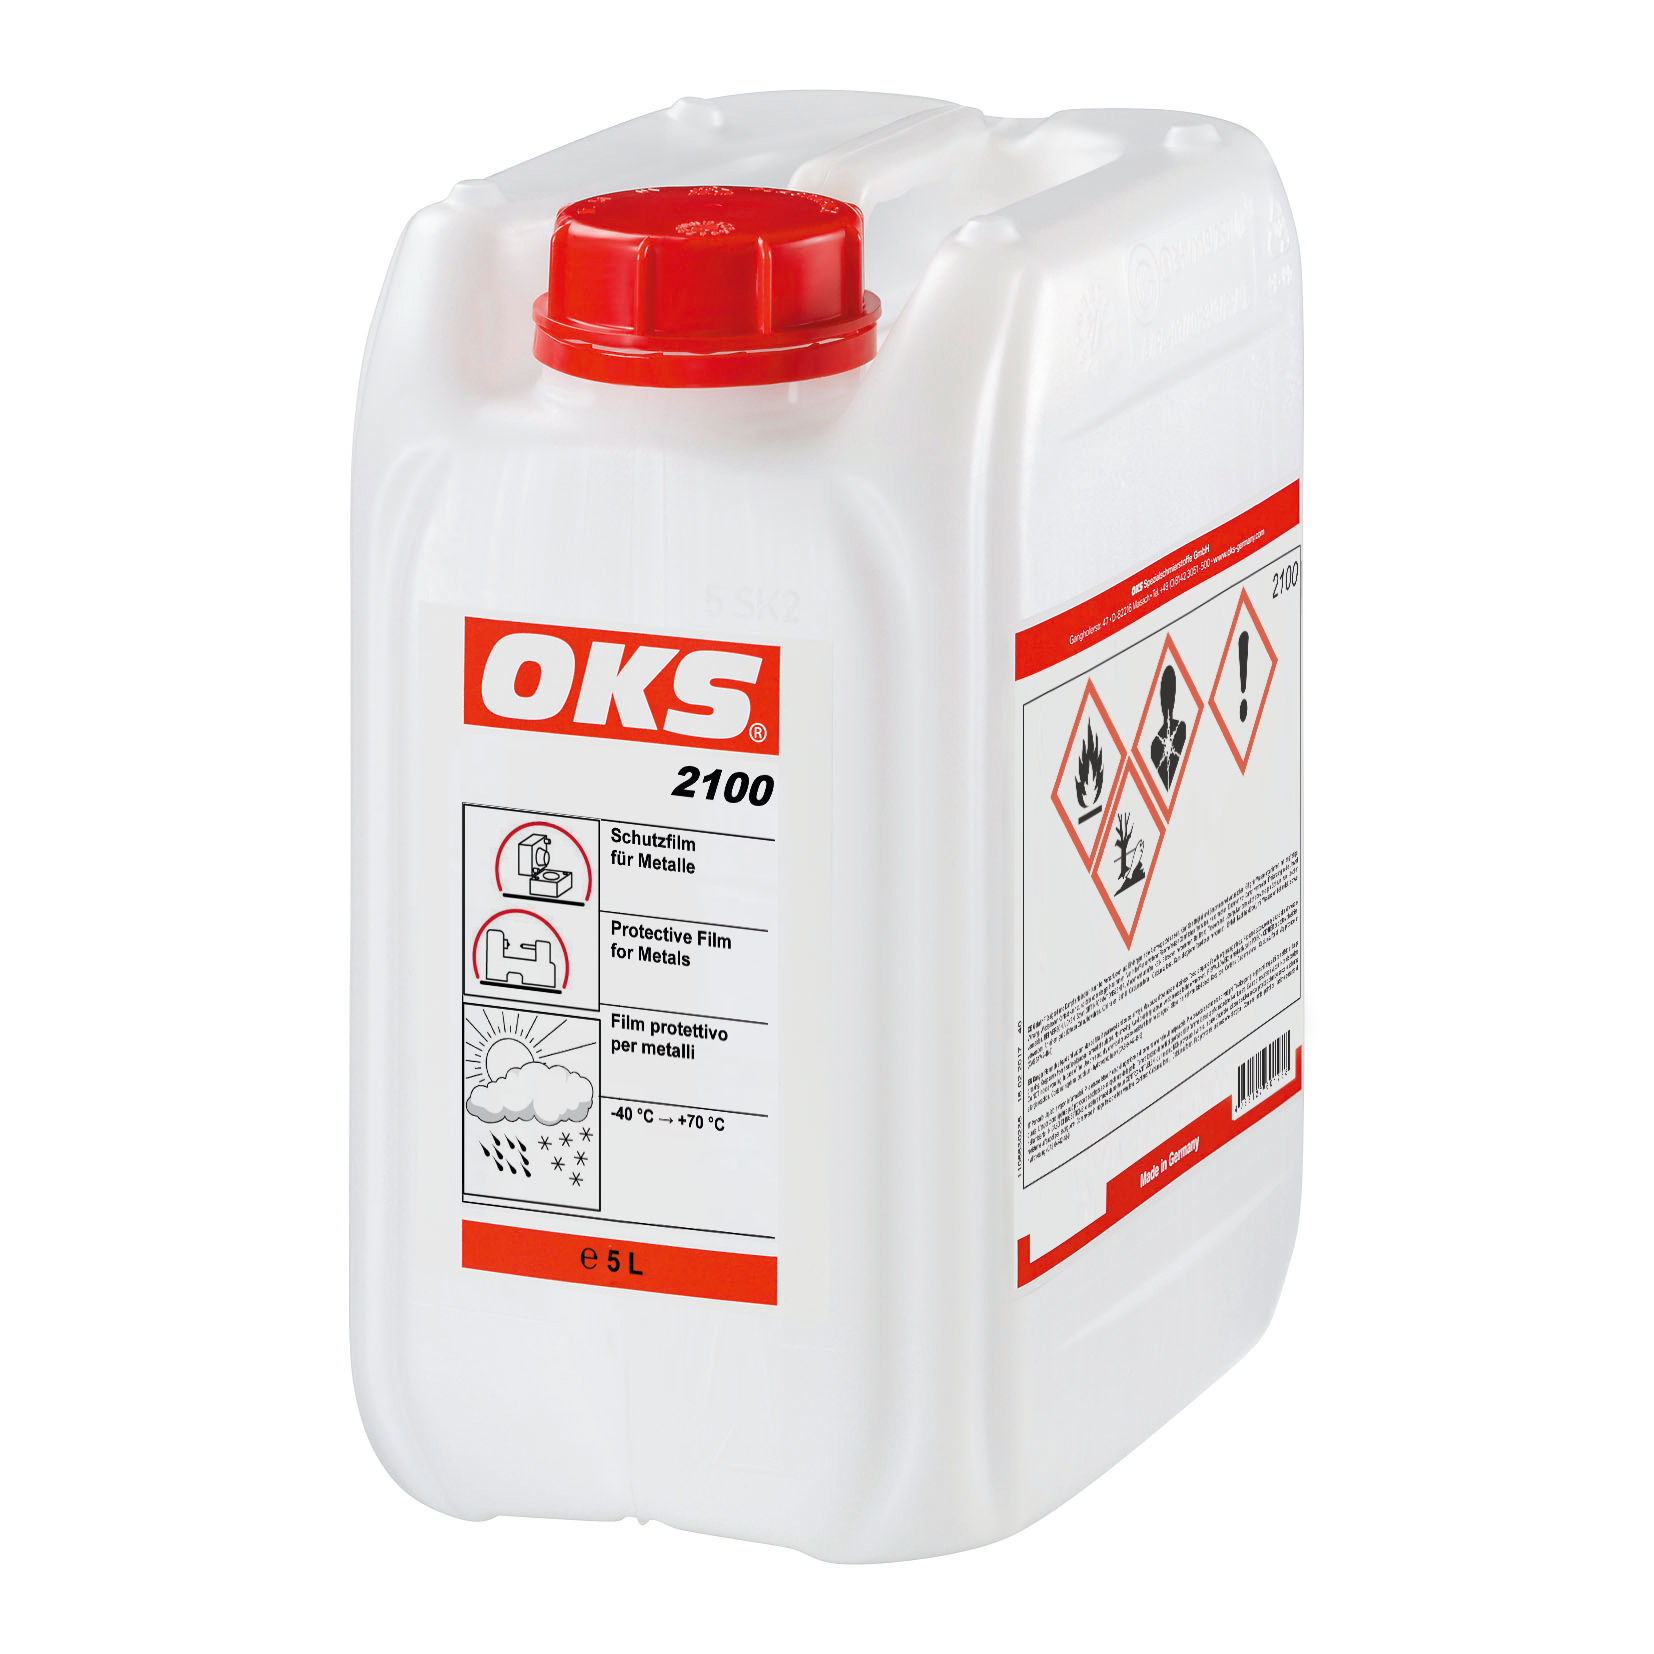 OKS2100-5 Droge, schone beschermingsfilm op wasbasis voor metalen, die gemakkelijk verwijderbaar is en tot twee jaar betrouwbaar beschermt tegen corrosie.